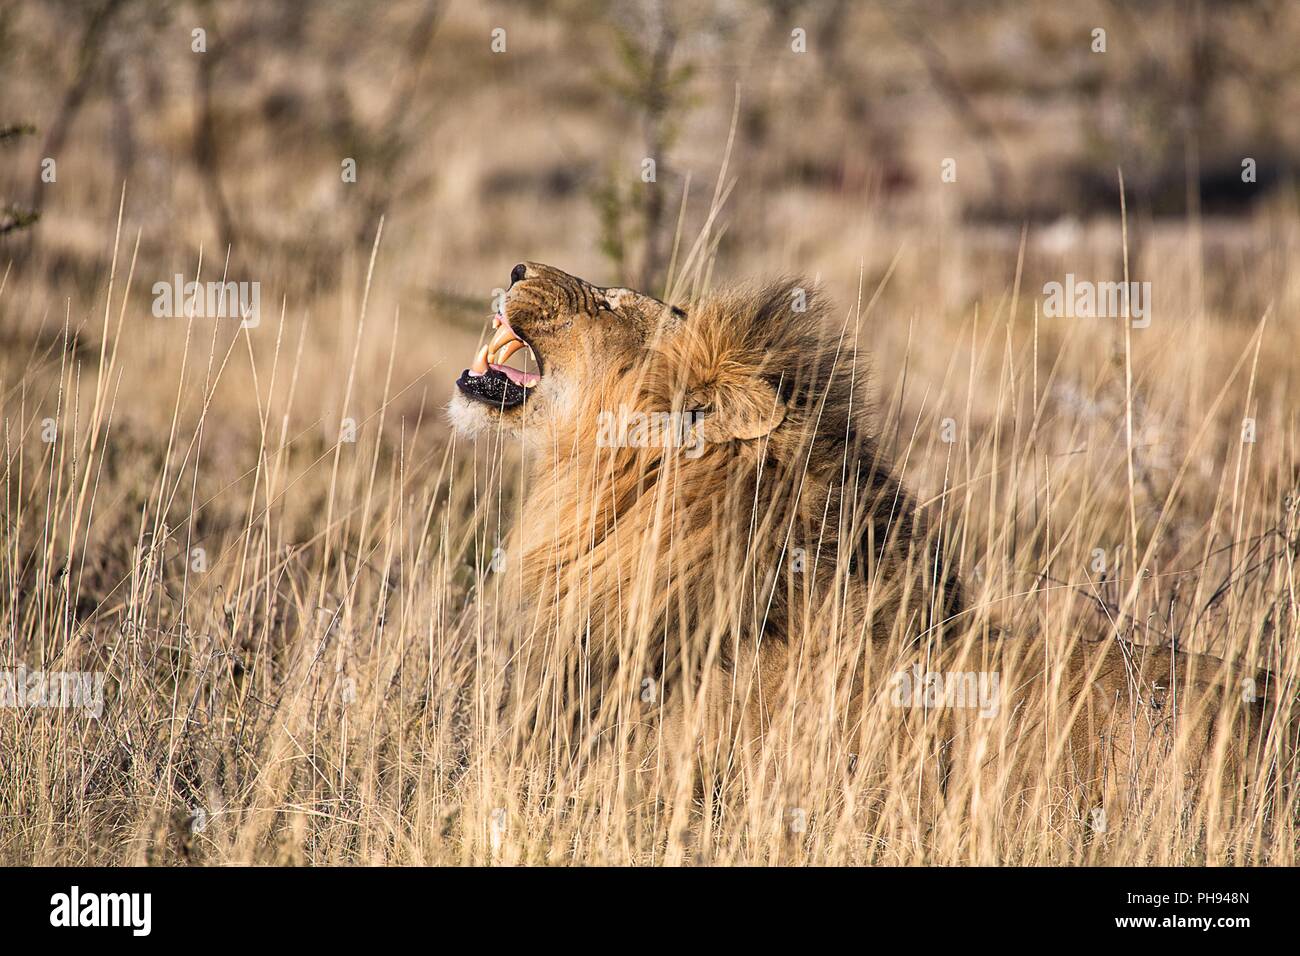 Roaring lion mâle au parc national d'Etosha, Namibie Banque D'Images